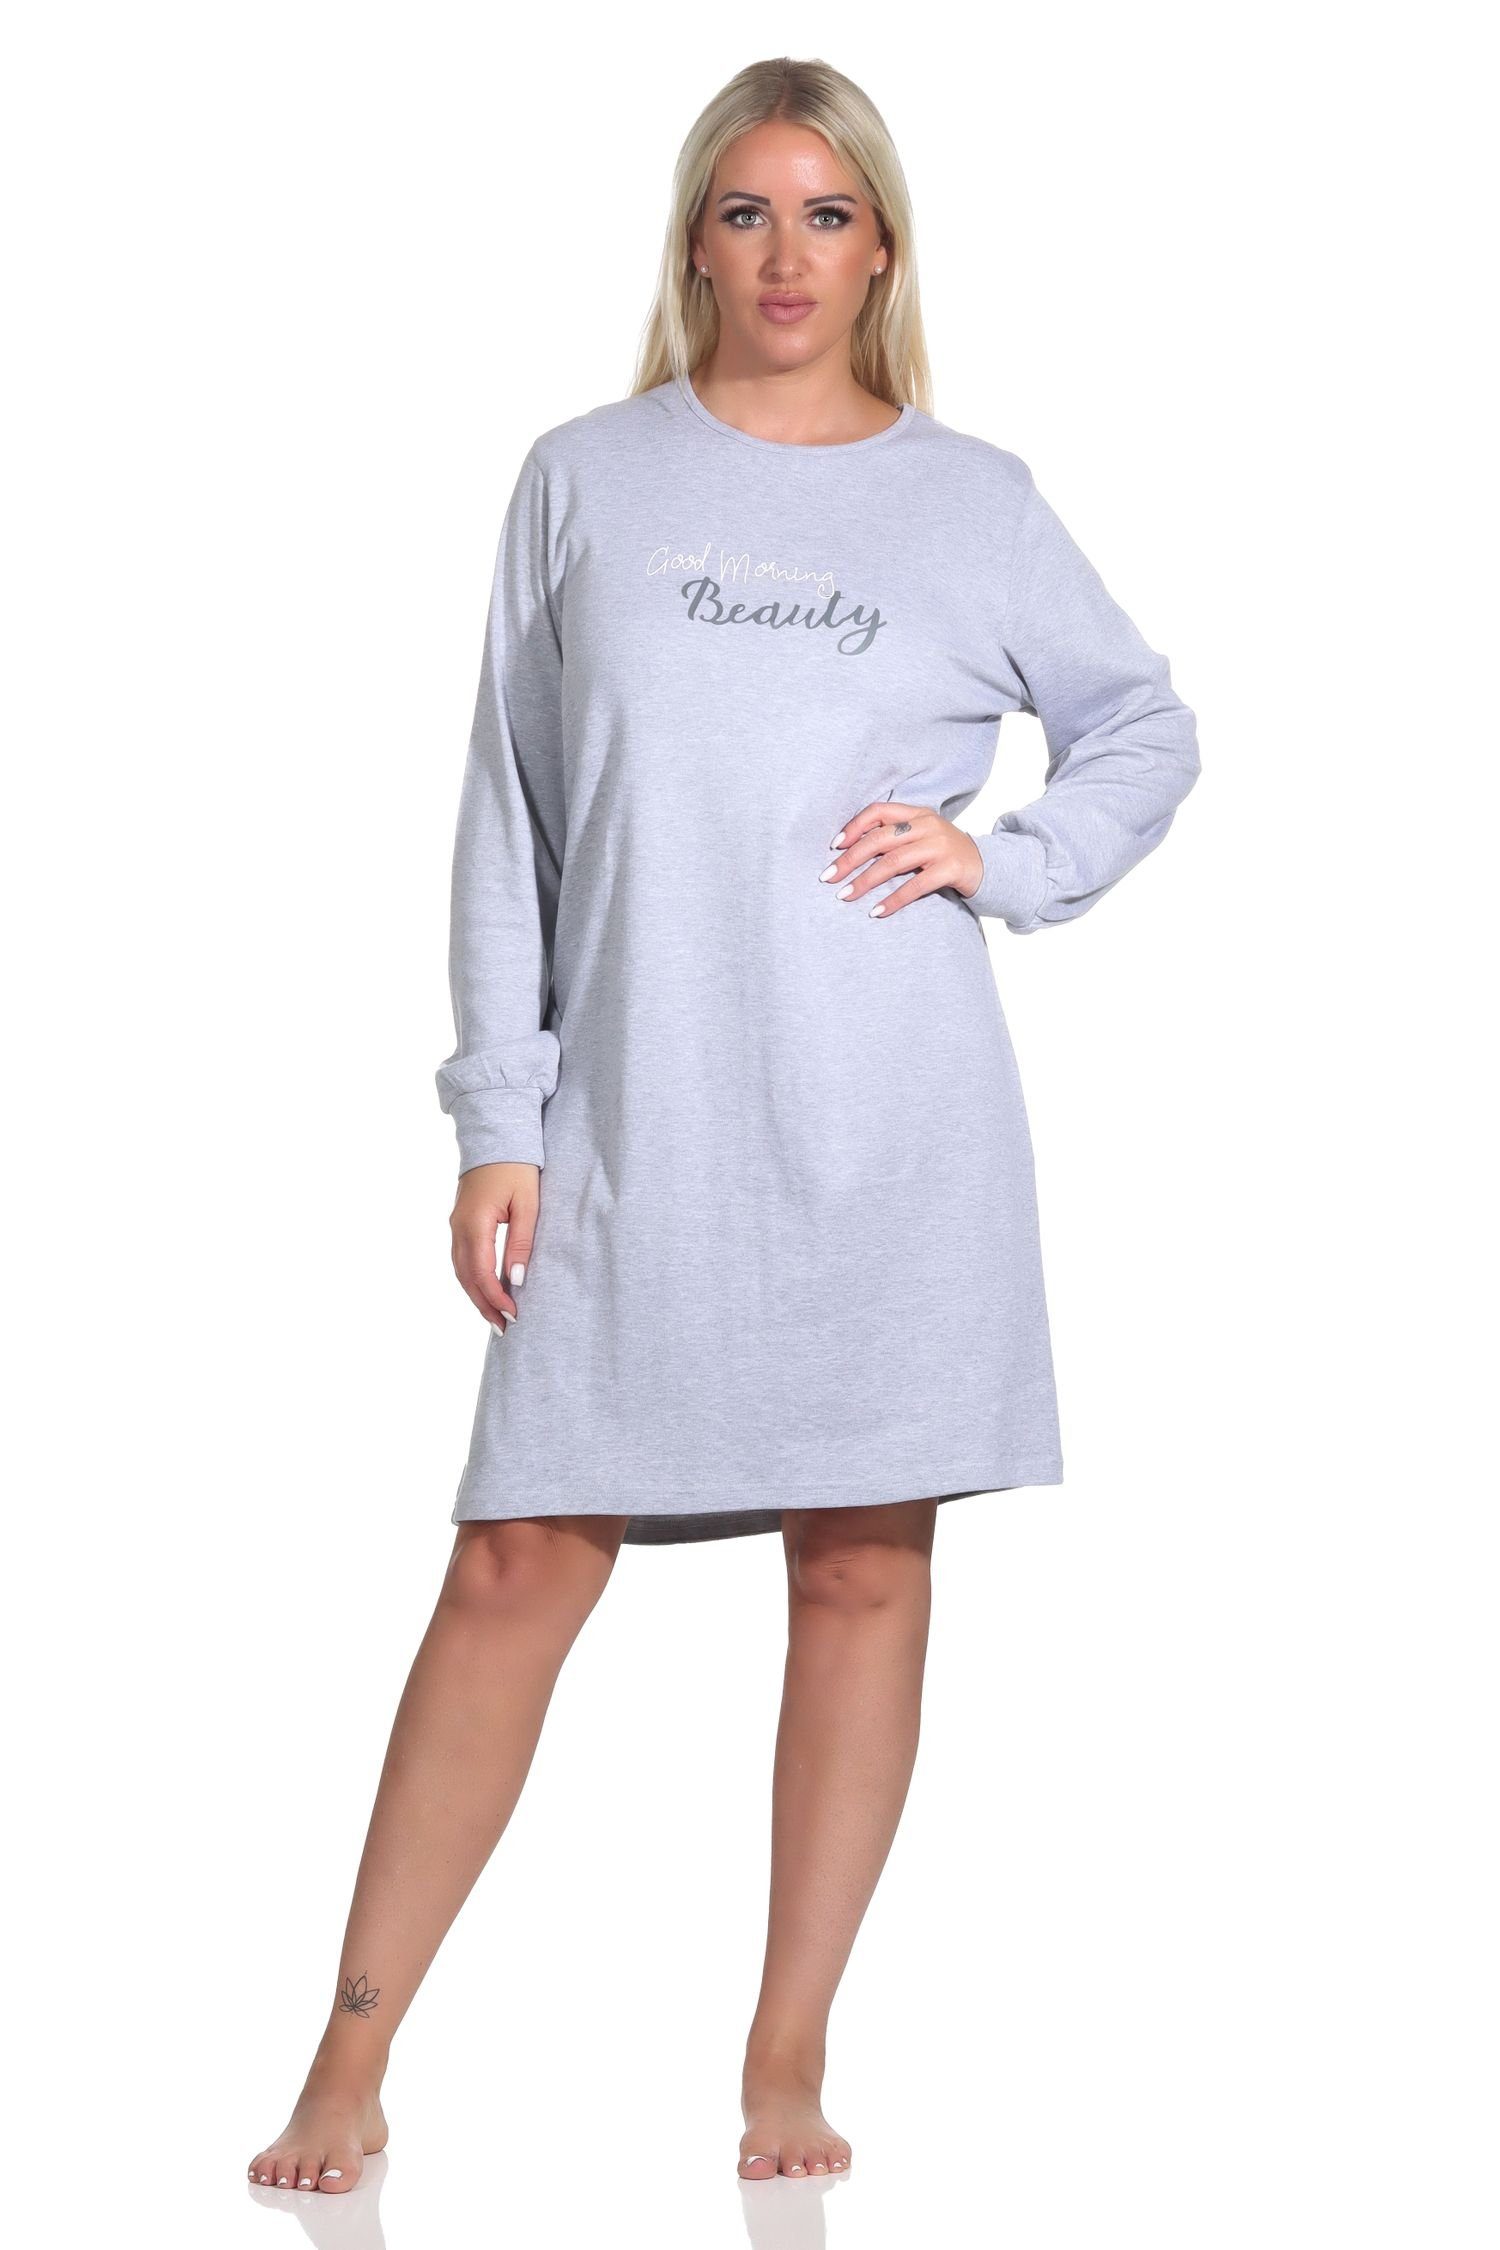 Normann Nachthemd Damen langarm Nachthemd mit Bündchen in Kuschel Interlock Qualität grau-melange | Nachthemden